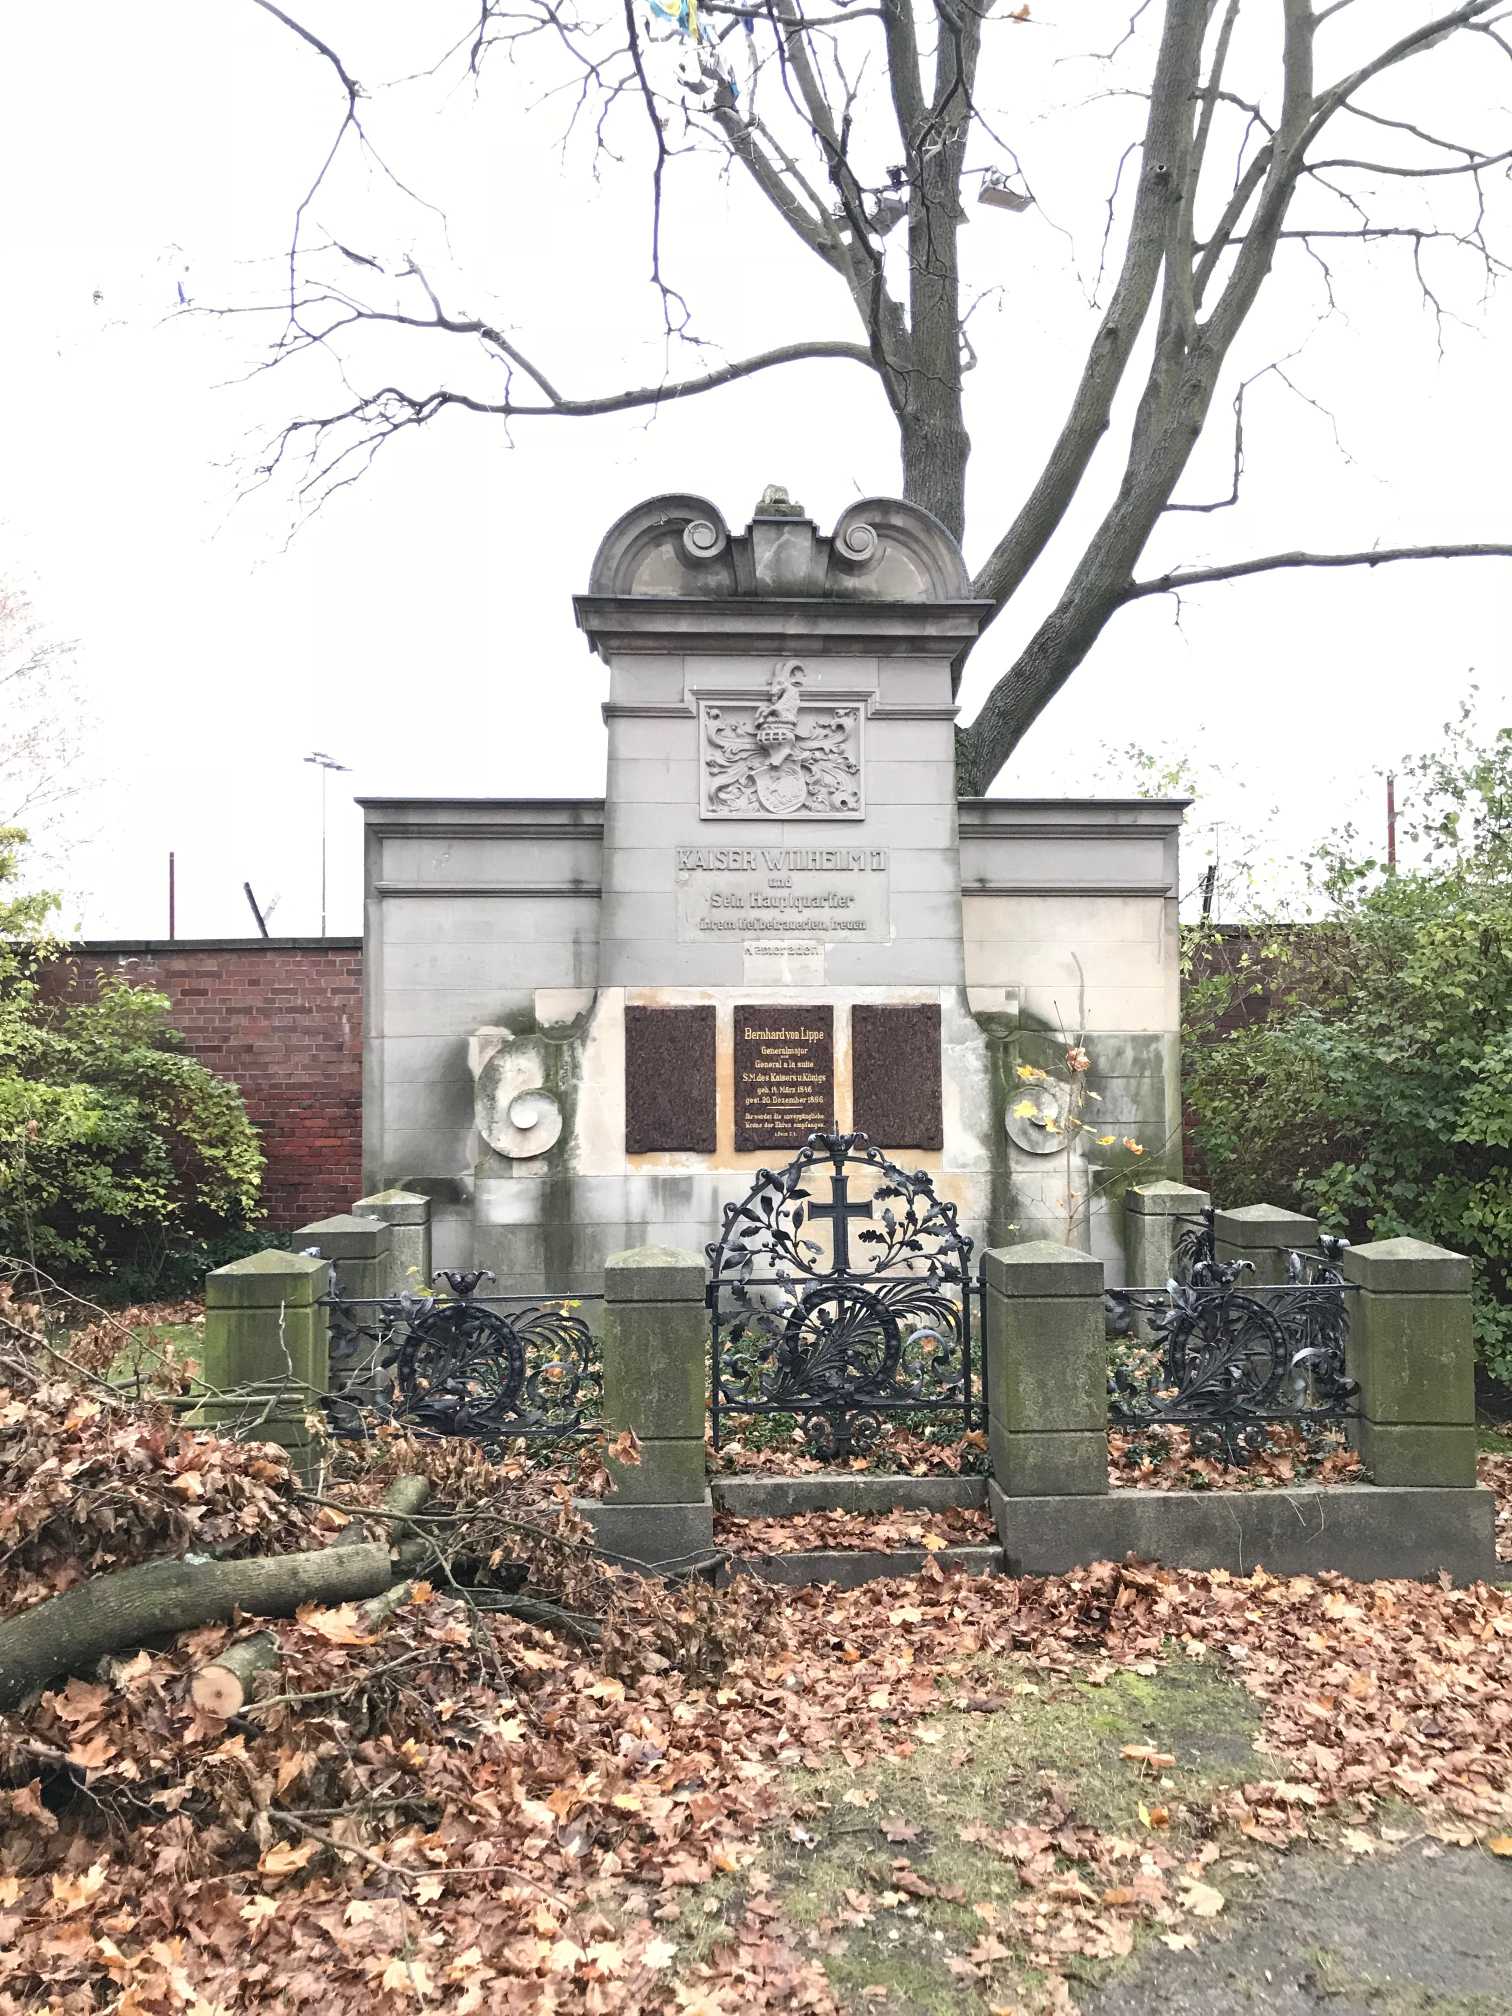 Grabstein Bernhard von Lippe, Friedhof Columbiadamm, Berlin